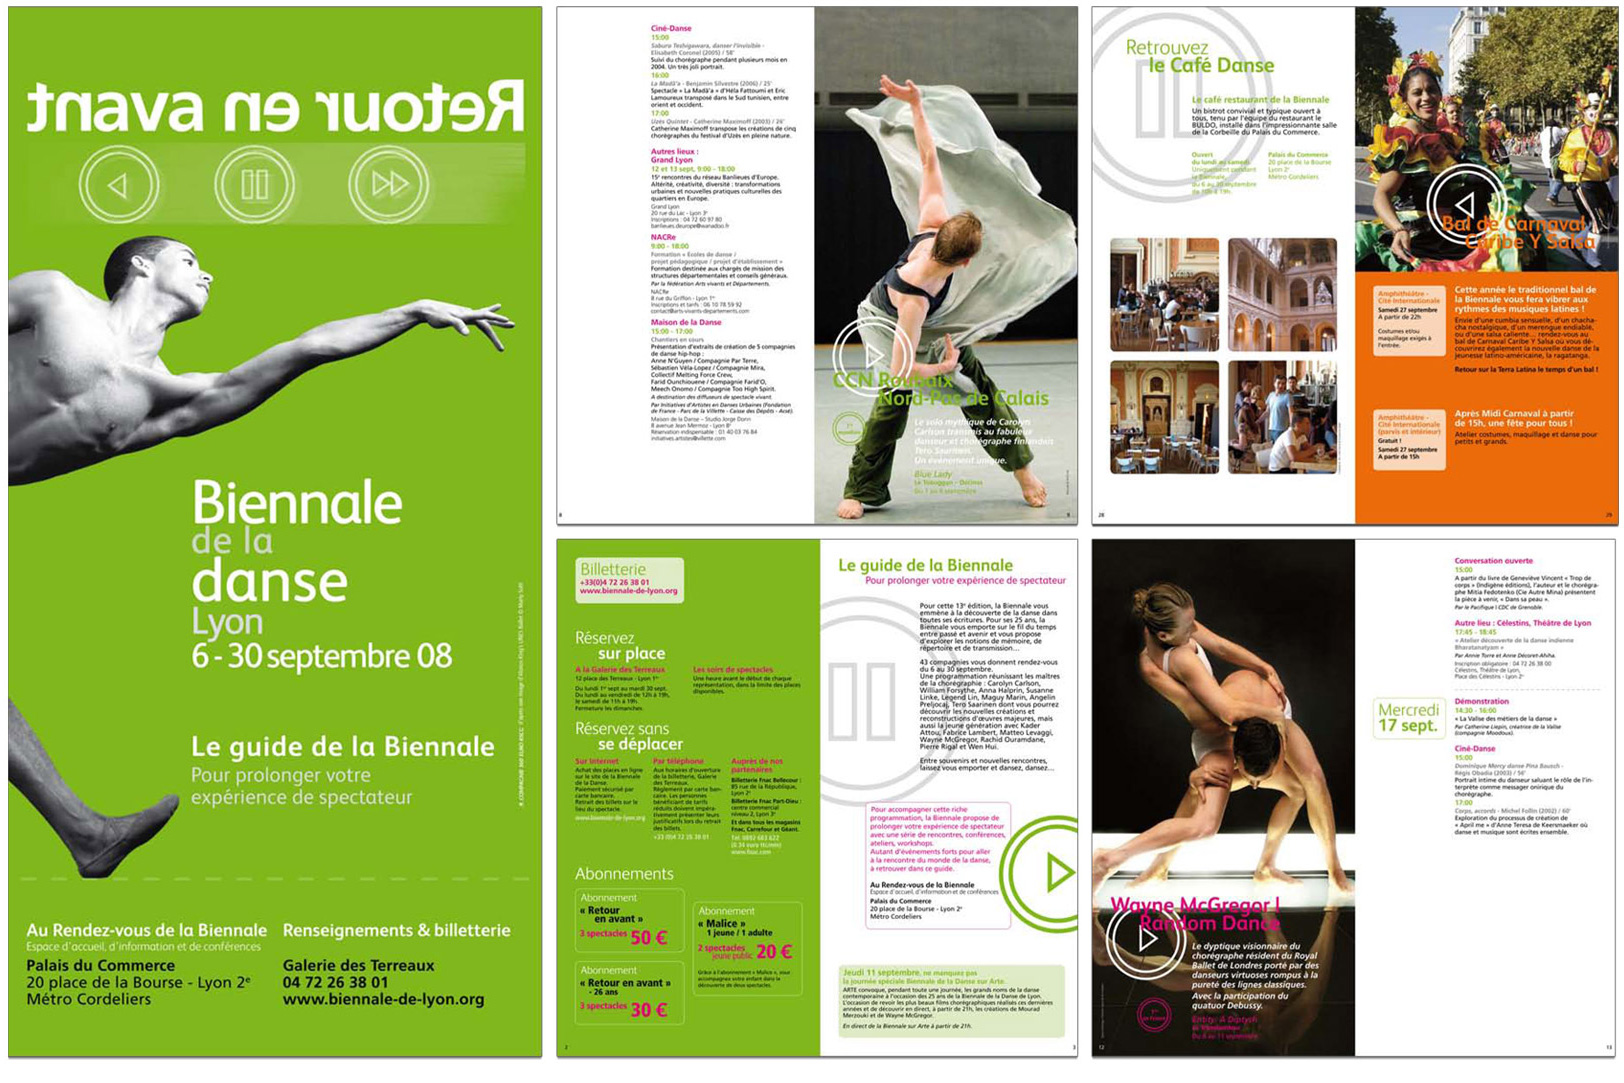 Communication pour la Biennale de la danse de Lyon 2008